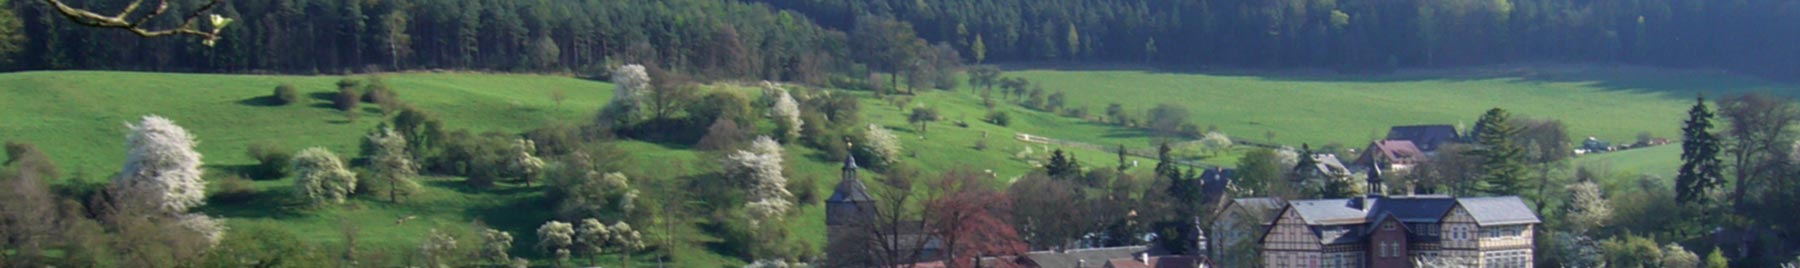 arial view of German village of Keilhau